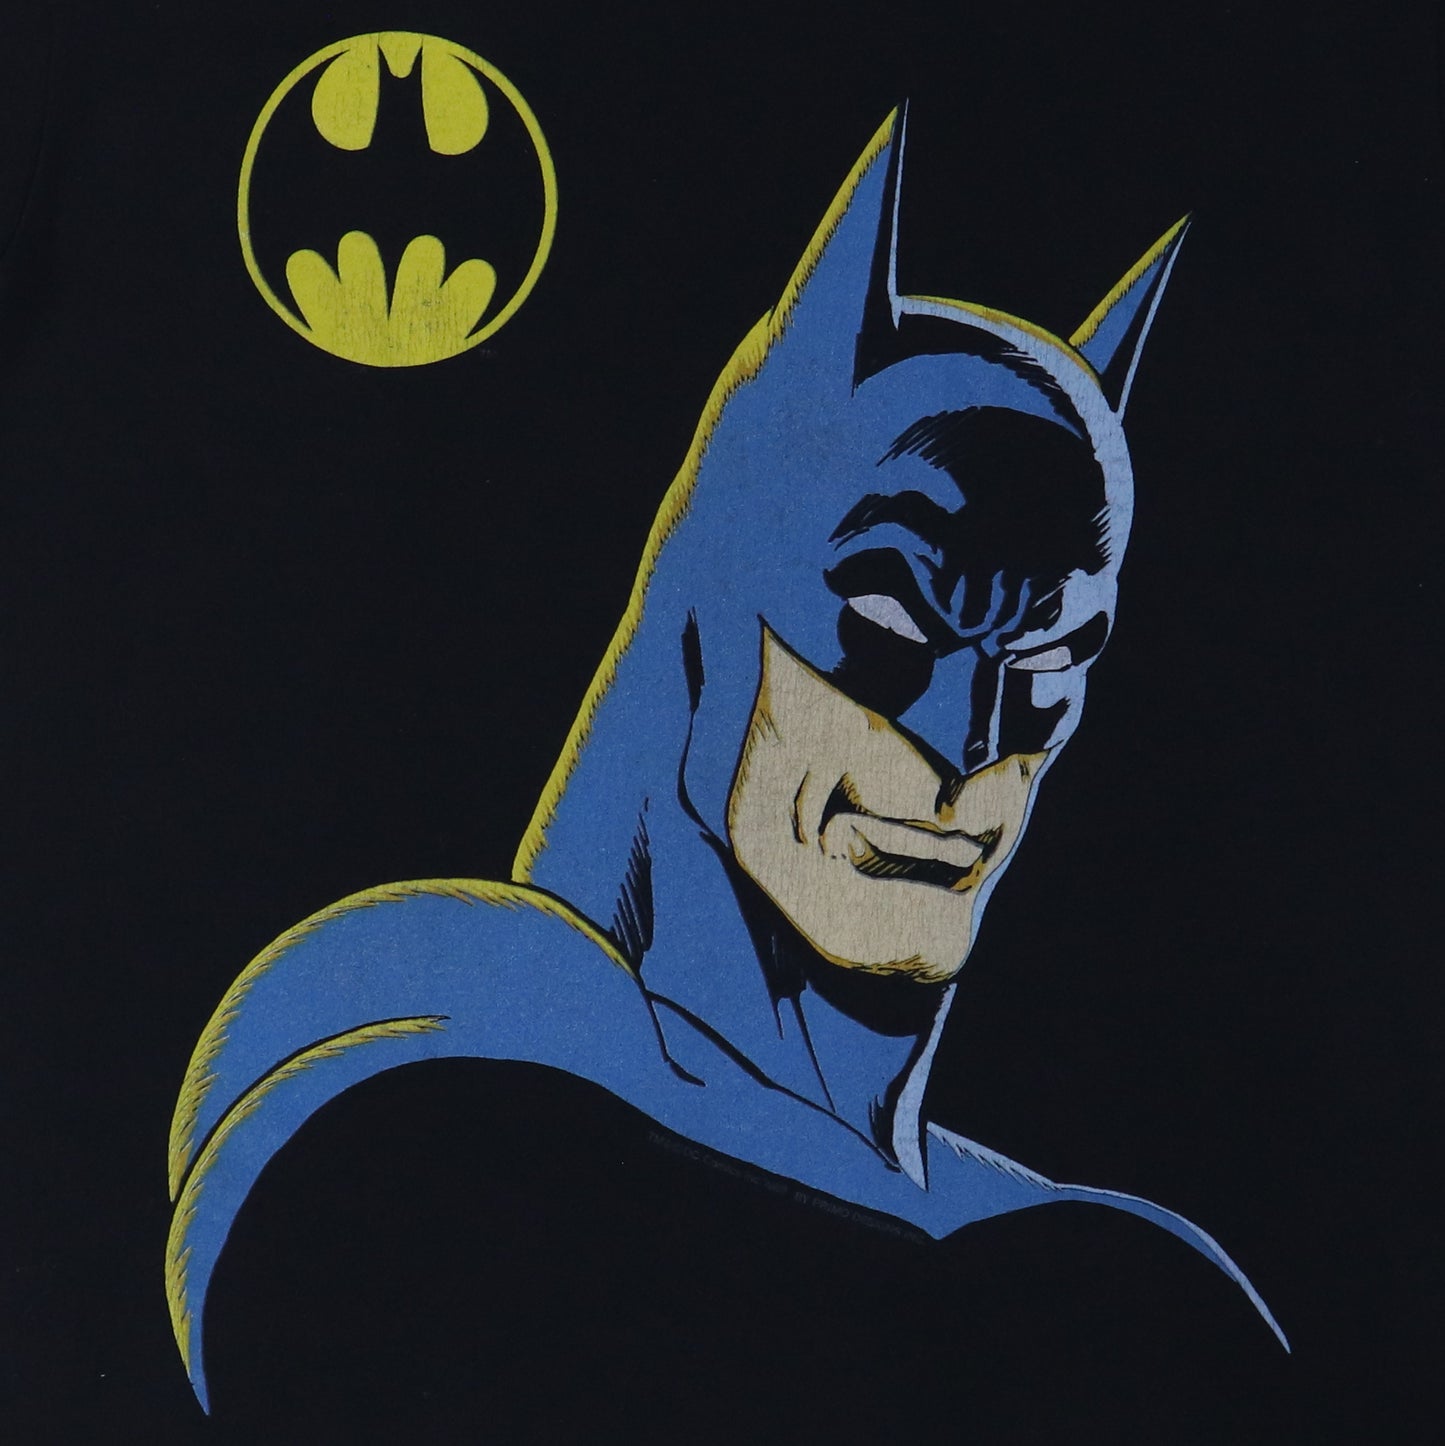 1989 Batman DC Comics Shirt